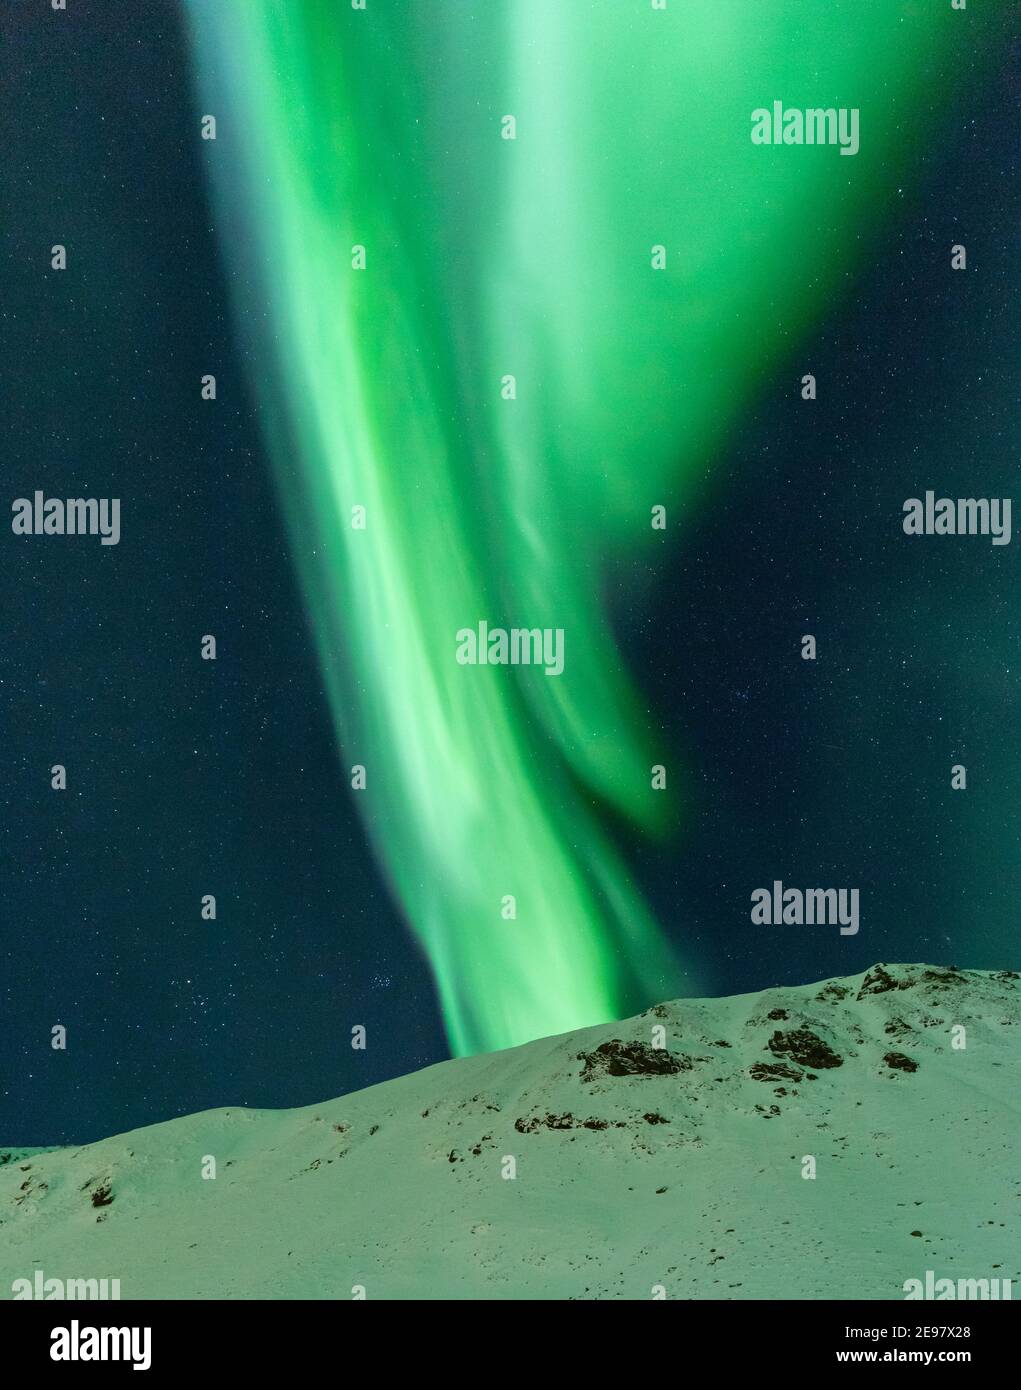 Lumières vertes des aurores boréales sur les sommets enneigés des îles Lofoten. Nuit d'hiver dans le nord de la Norvège. Banque D'Images